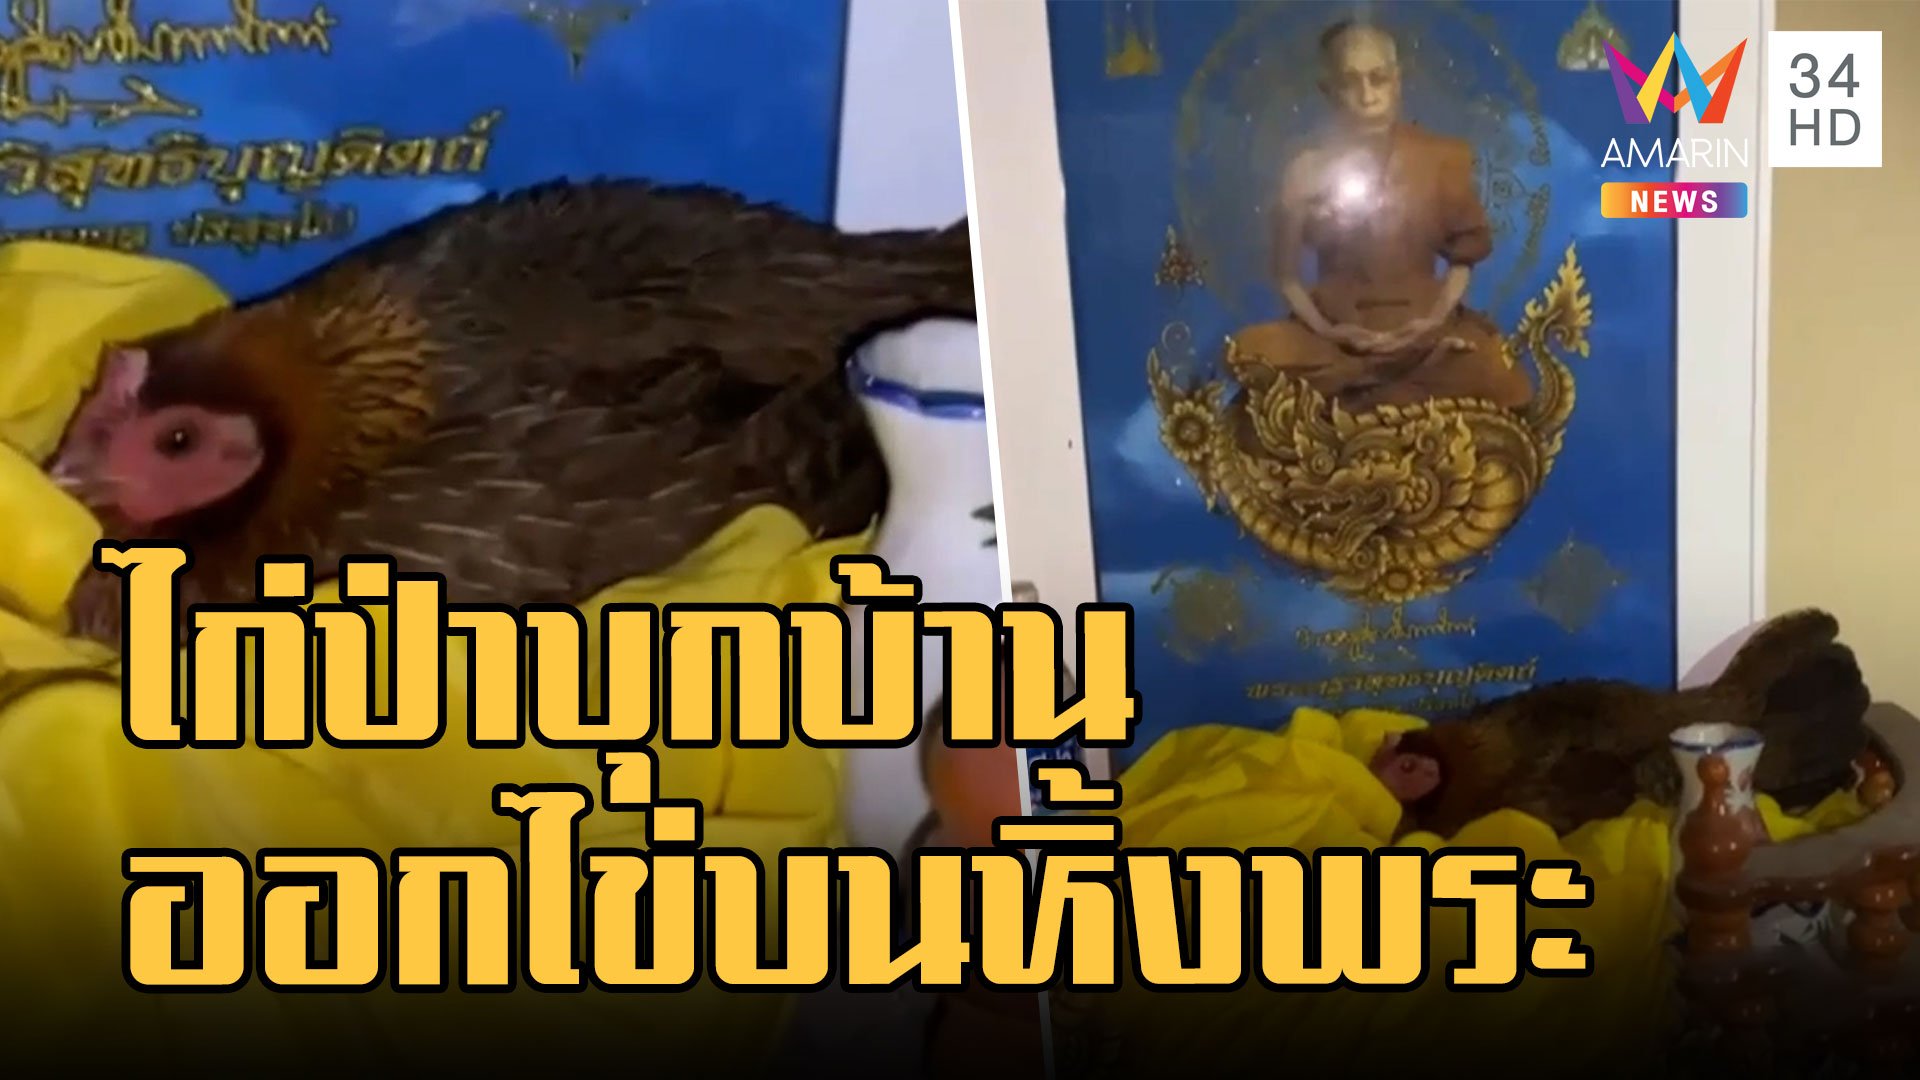 แม่ไก่ป่าฟักไข่บนหิ้งพระบูชาหลวงพ่อนวล ปริสุทโธ | ข่าวอรุณอมรินทร์ | 27 ธ.ค. 65 | AMARIN TVHD34